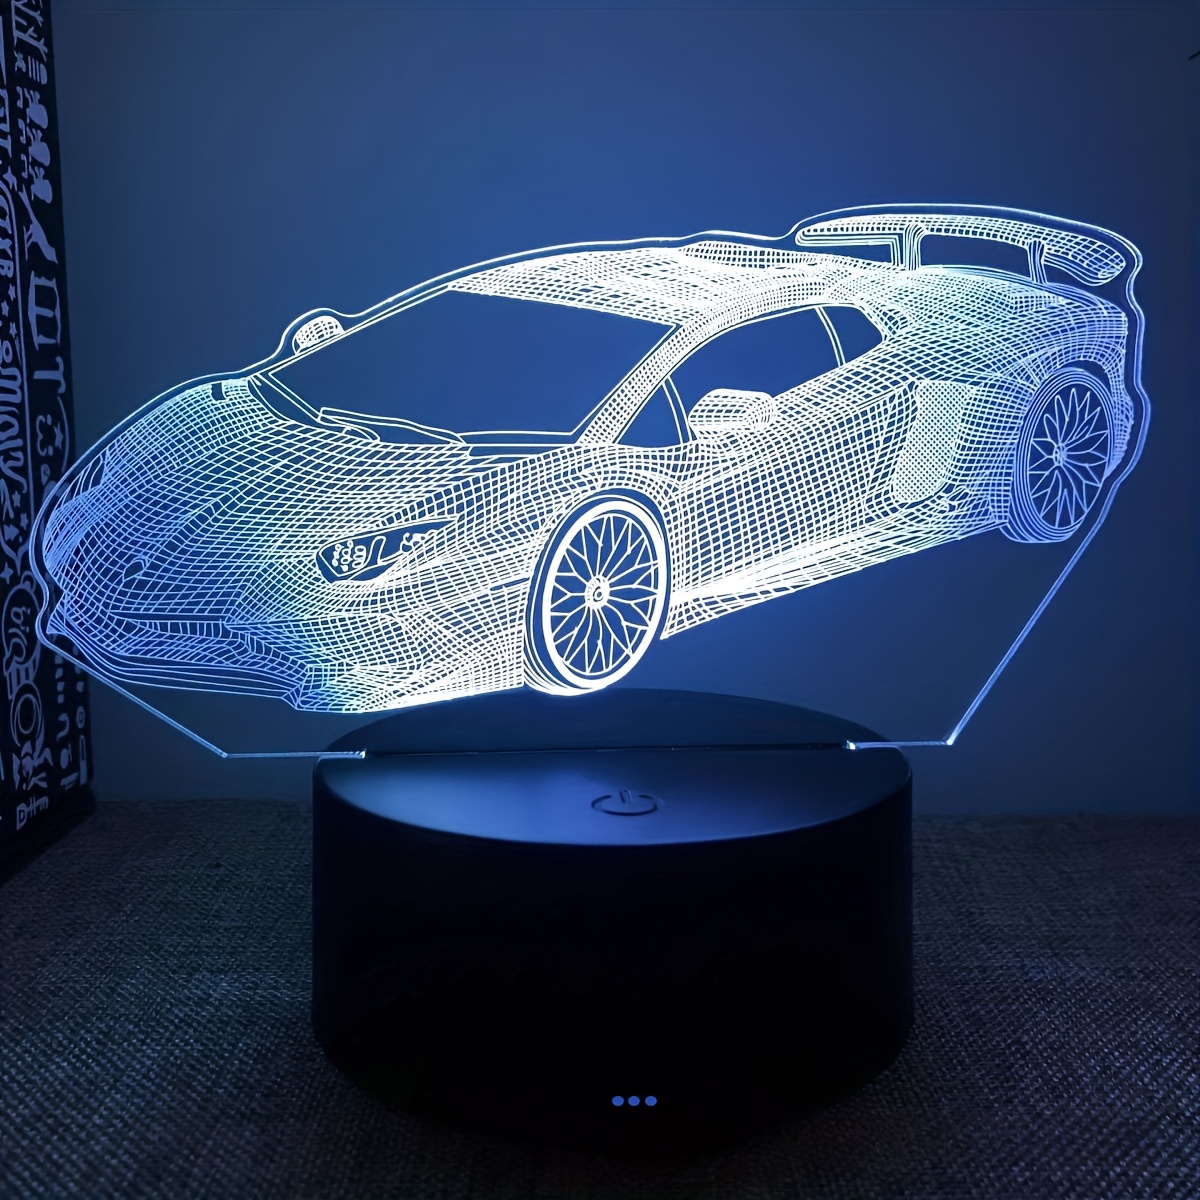 Mittelfinger-Autolicht, Straßen-Rage-LED-Zeichen für Auto, glogestisches  Handlicht, leuchtender Mittelfinger für Autofenster mit Fernbedienung